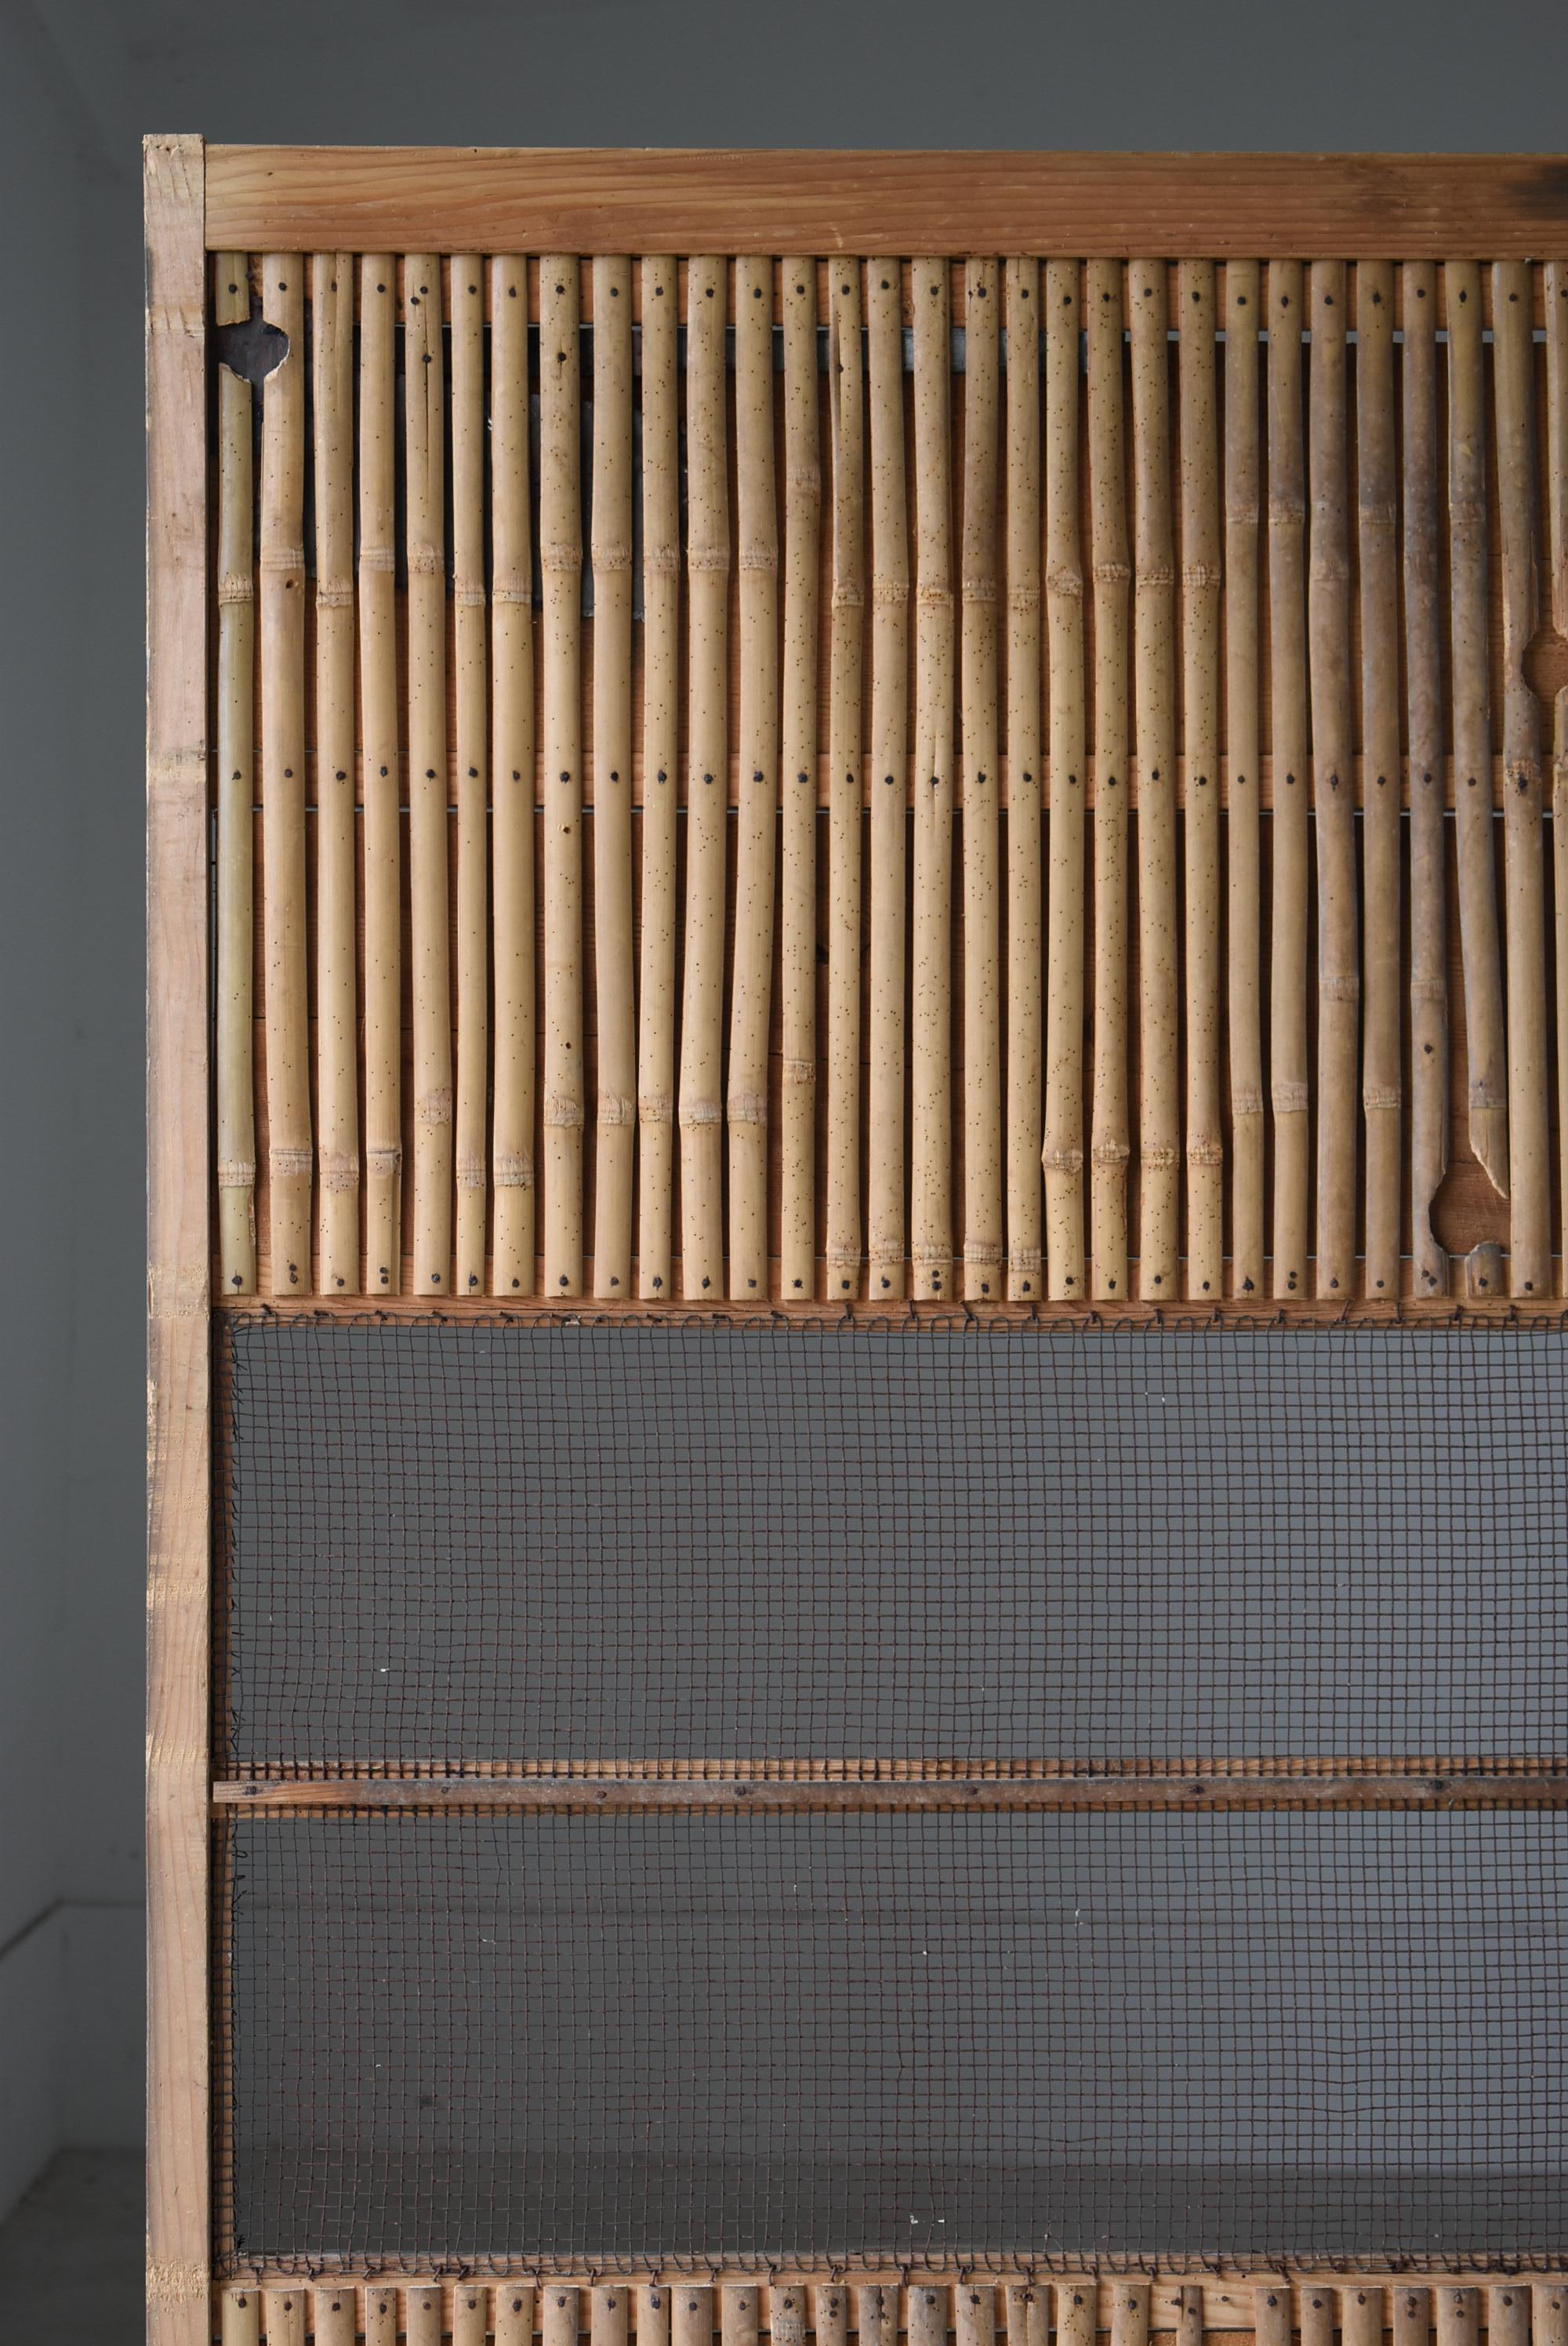 Dies ist eine sehr alte japanische Schiebetür.
Sie stammt aus der Meiji-Zeit (1860-1900).
Es wird aus Zedernholz, Bambus, Zinn und verschiedenen anderen MATERIALEN hergestellt.

Es ist das Nonplusultra der Einfachheit.

Das Blech wird zum Ausfüllen